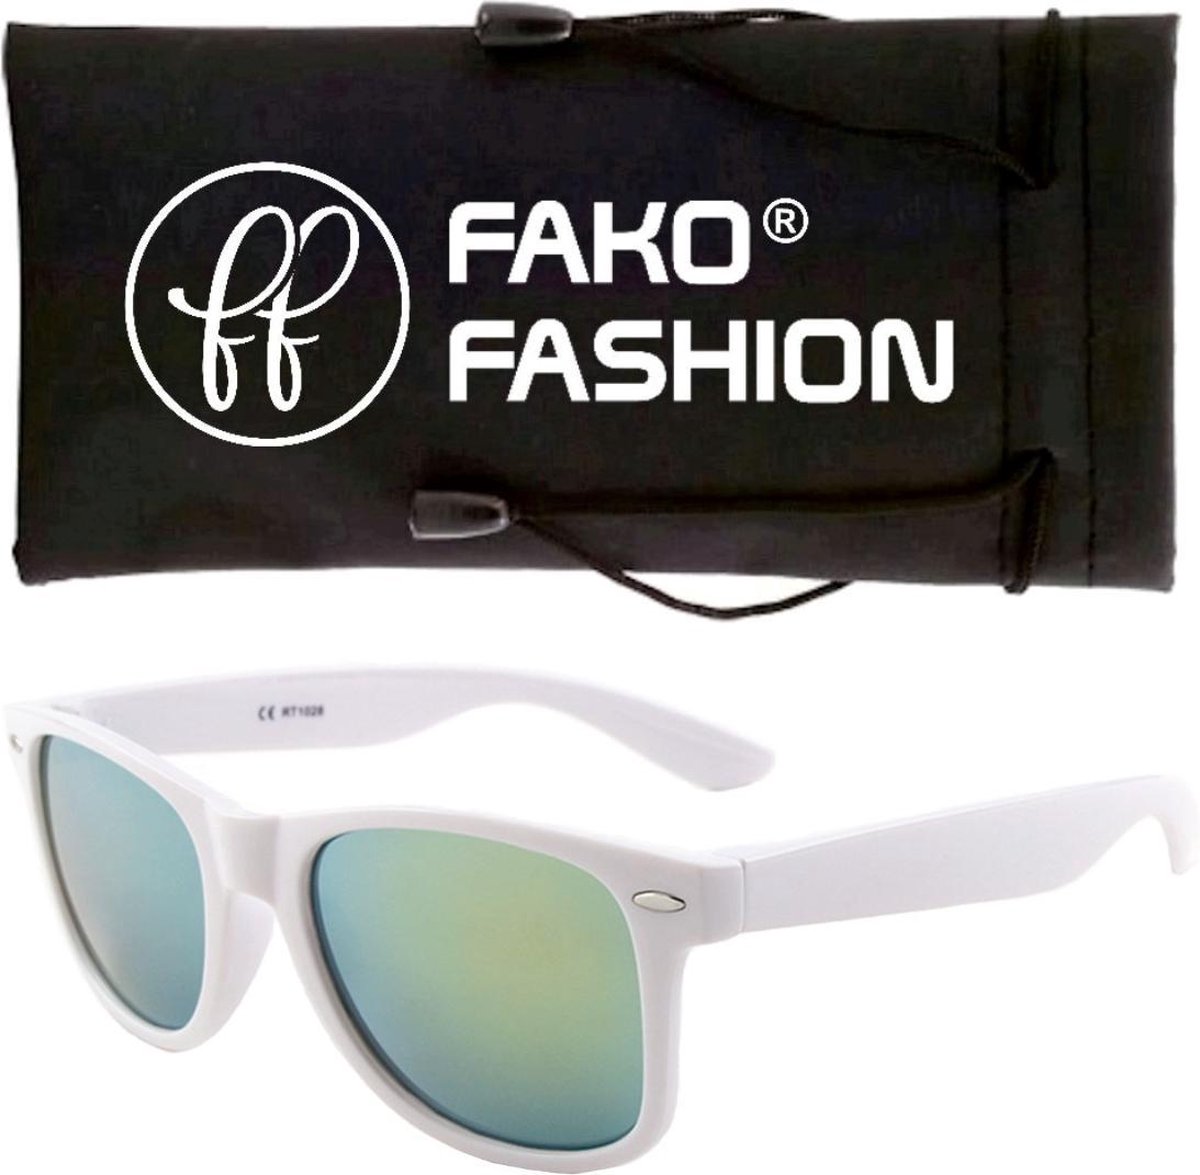 Fako Fashion® - Zonnebril - Wit - Spiegel Groen